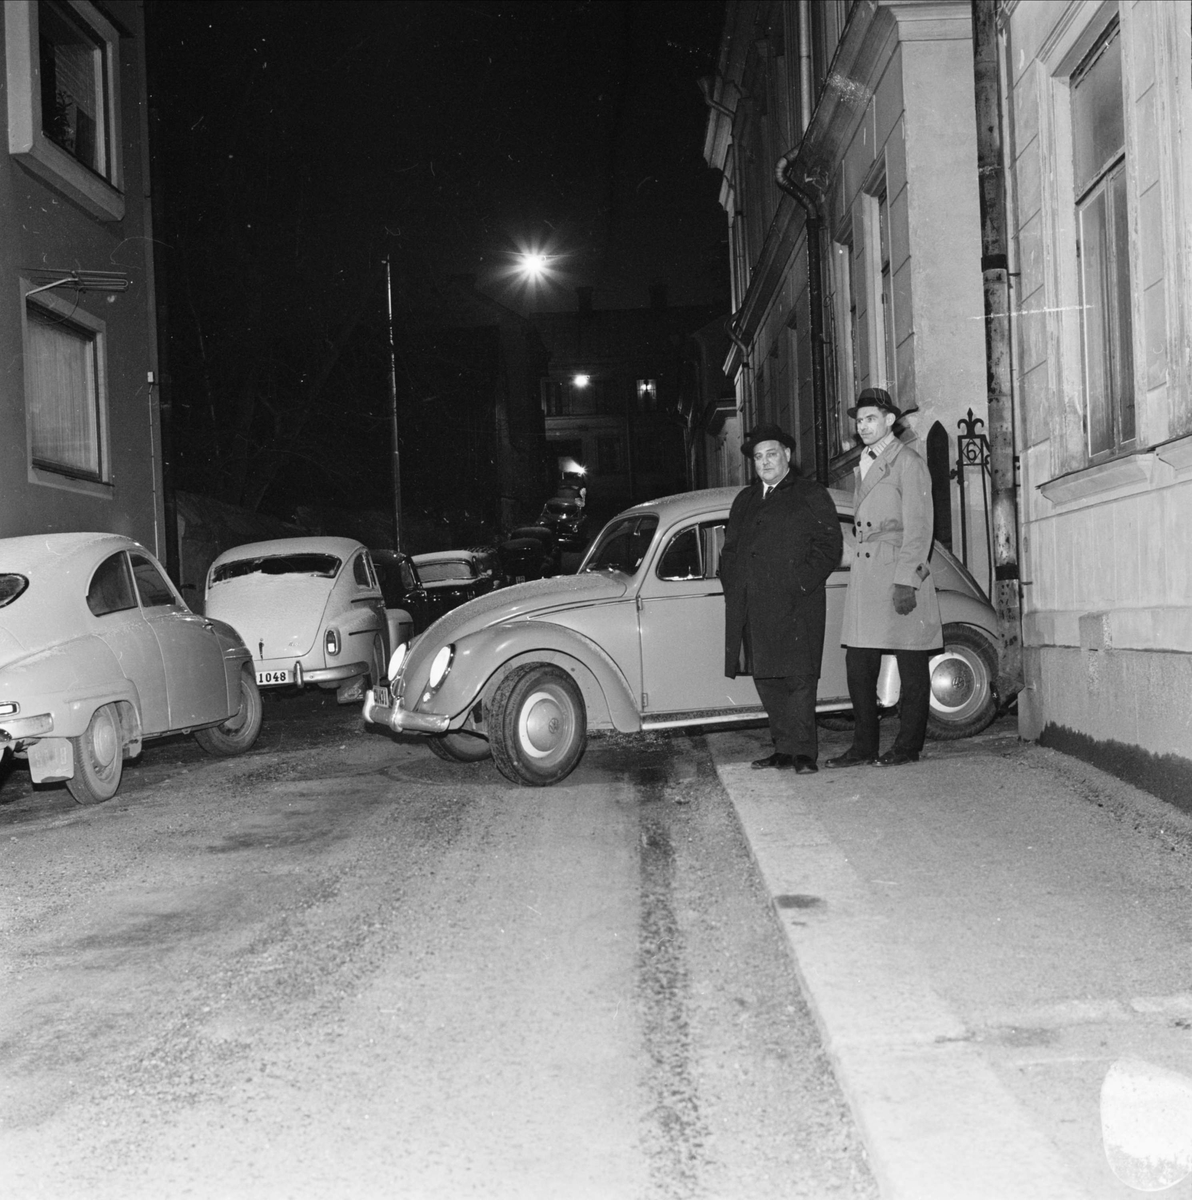 "Uppsalas parkeringsproblem växer. Sjuttiofem p-syndare på en dag", överkonstapel Yngve Svensson och polisman Bengt Ekström på Svartmangatan, Uppsala 1964